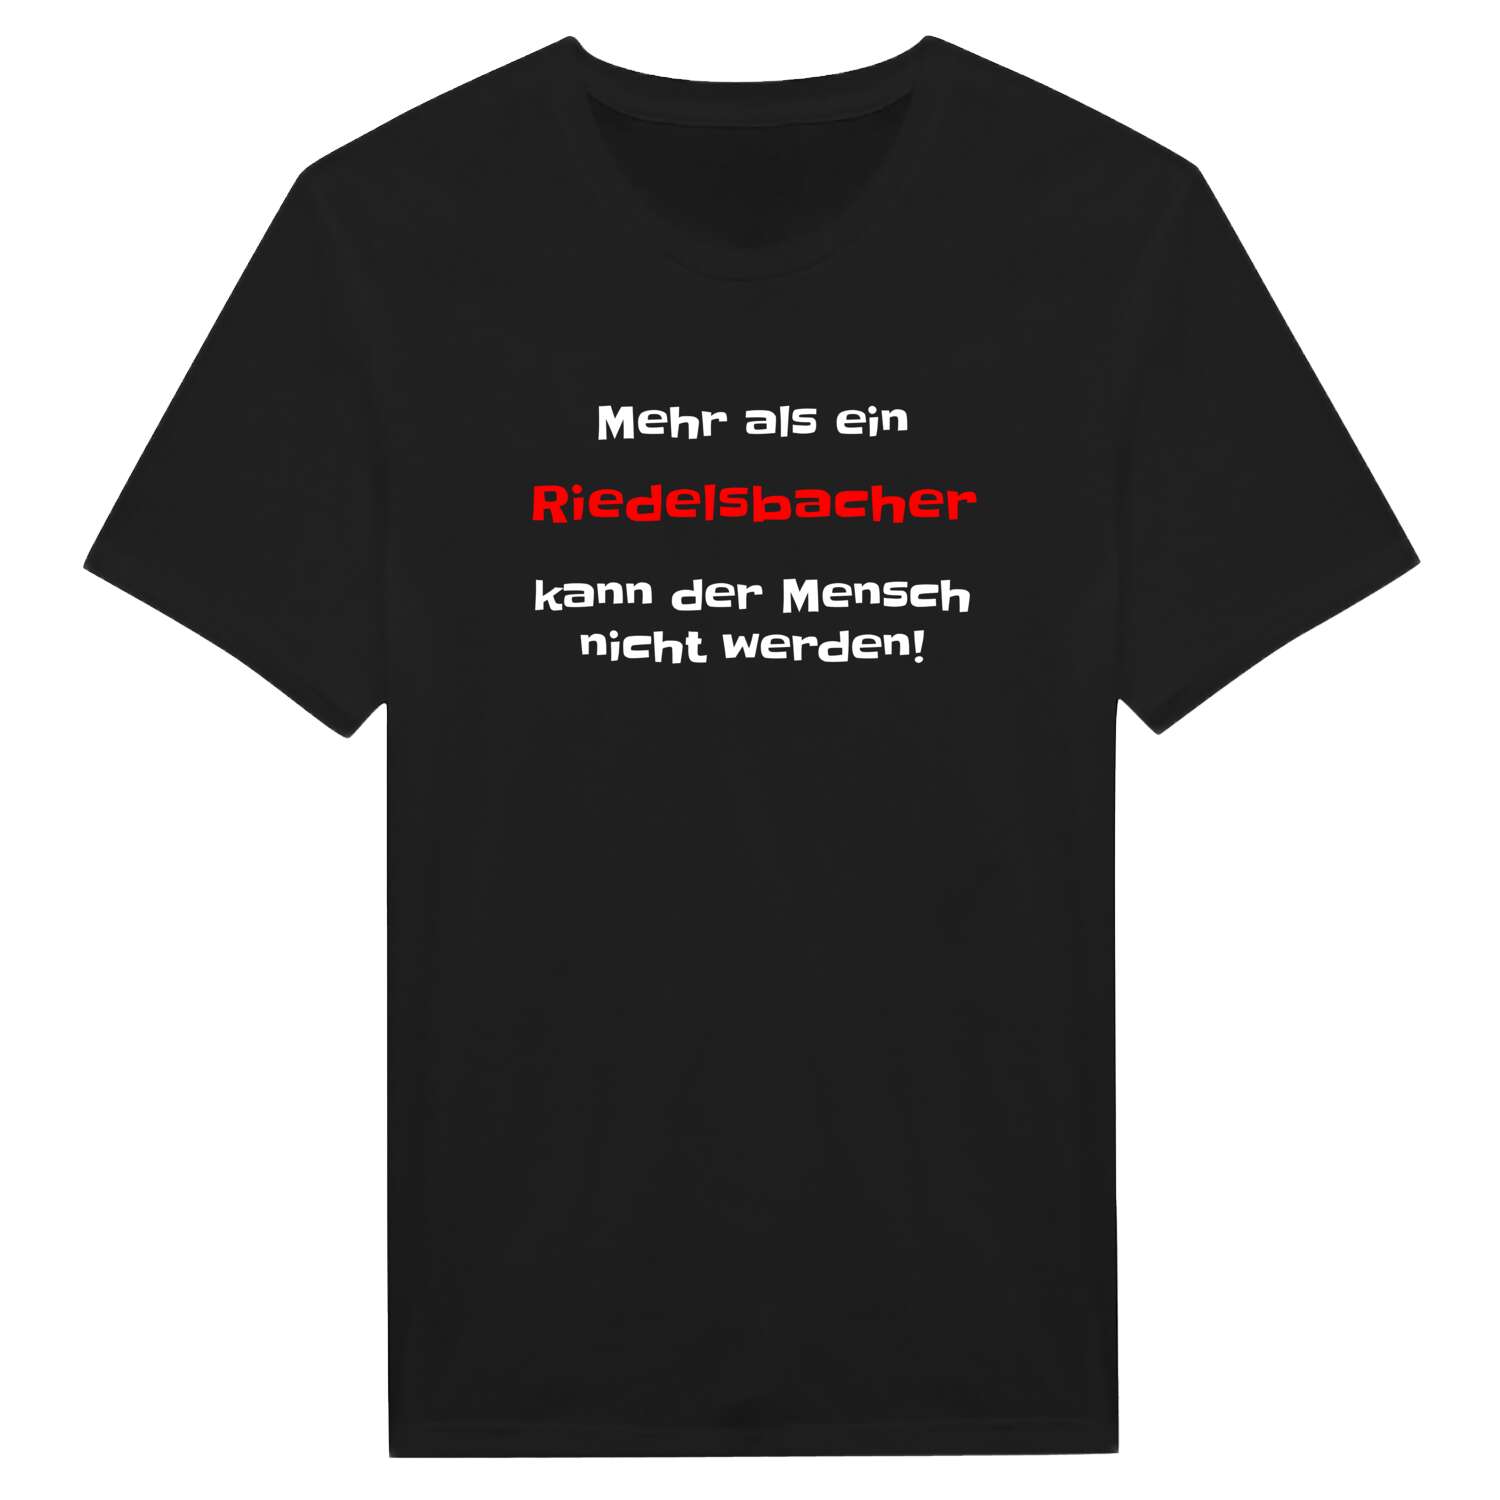 Riedelsbach T-Shirt »Mehr als ein«